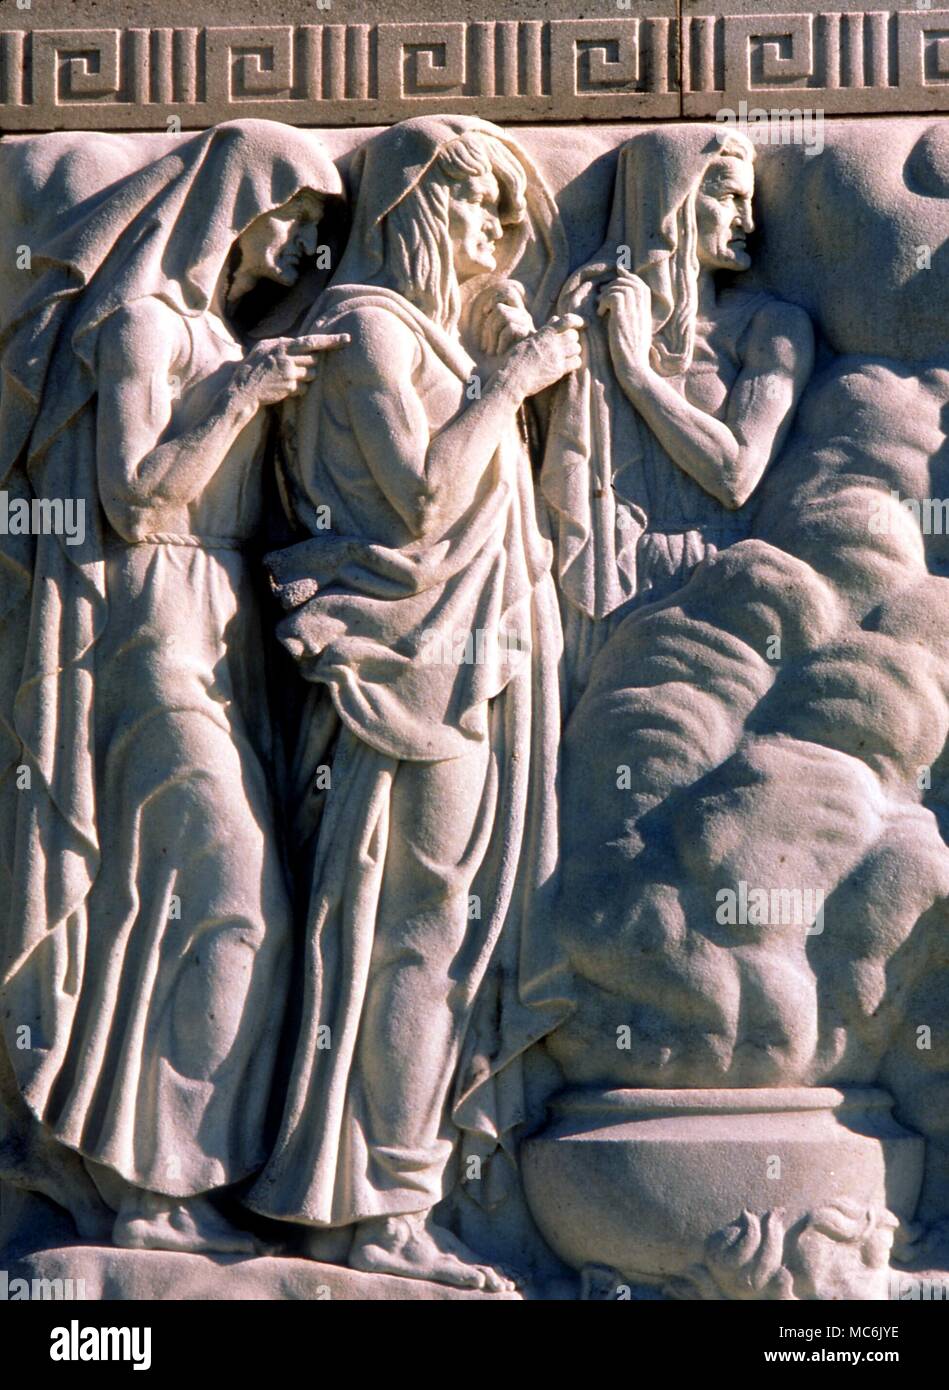 Brujería - BRUJAS DE MACBETH los tres "Weird Sisters' que se reúnen en el arrasado Macbeth Heath. Escultura en la fachada de la Biblioteca Folger Shakespeare Memorial en Washington DC. Esculpida por John Gregory, 1932 Foto de stock